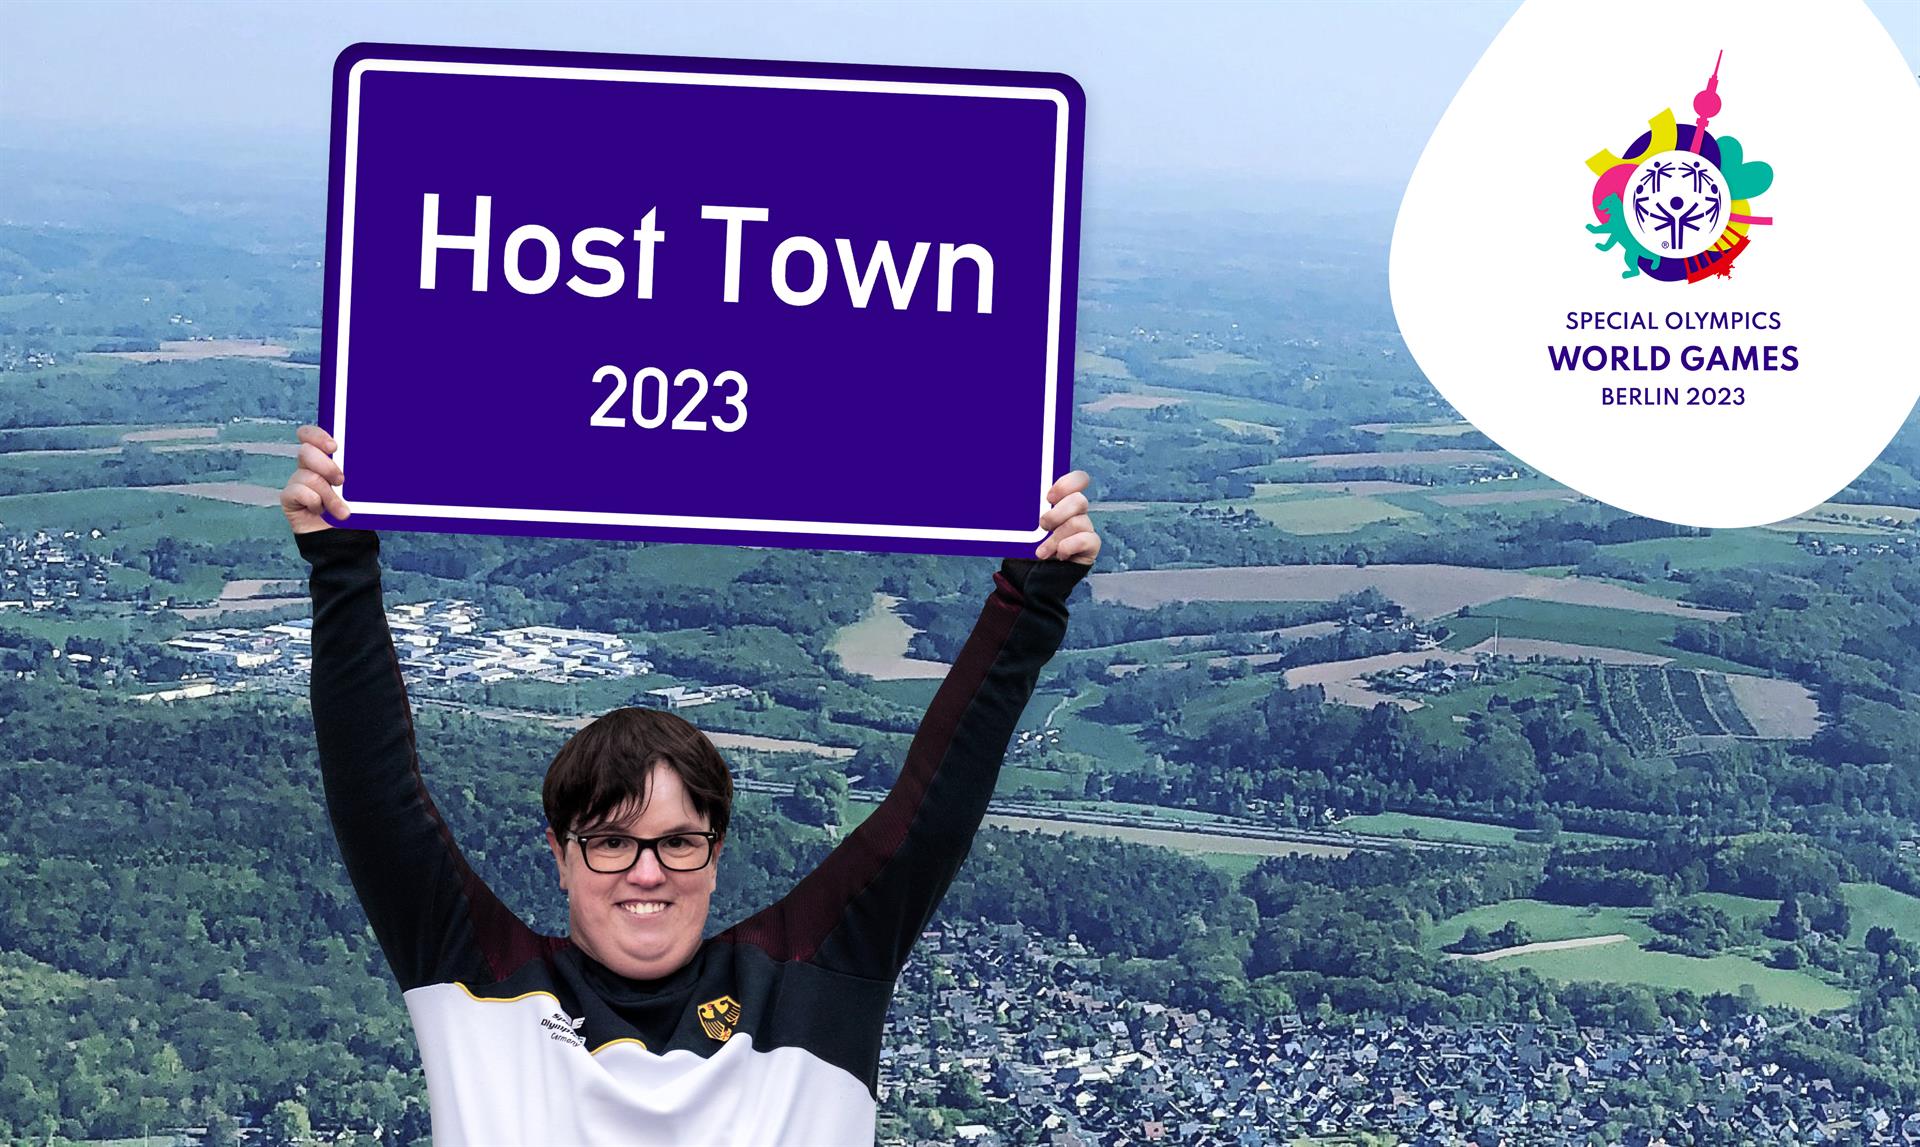 Frau hält Schild in den Händen mit der Beschriftung Host Town 2023